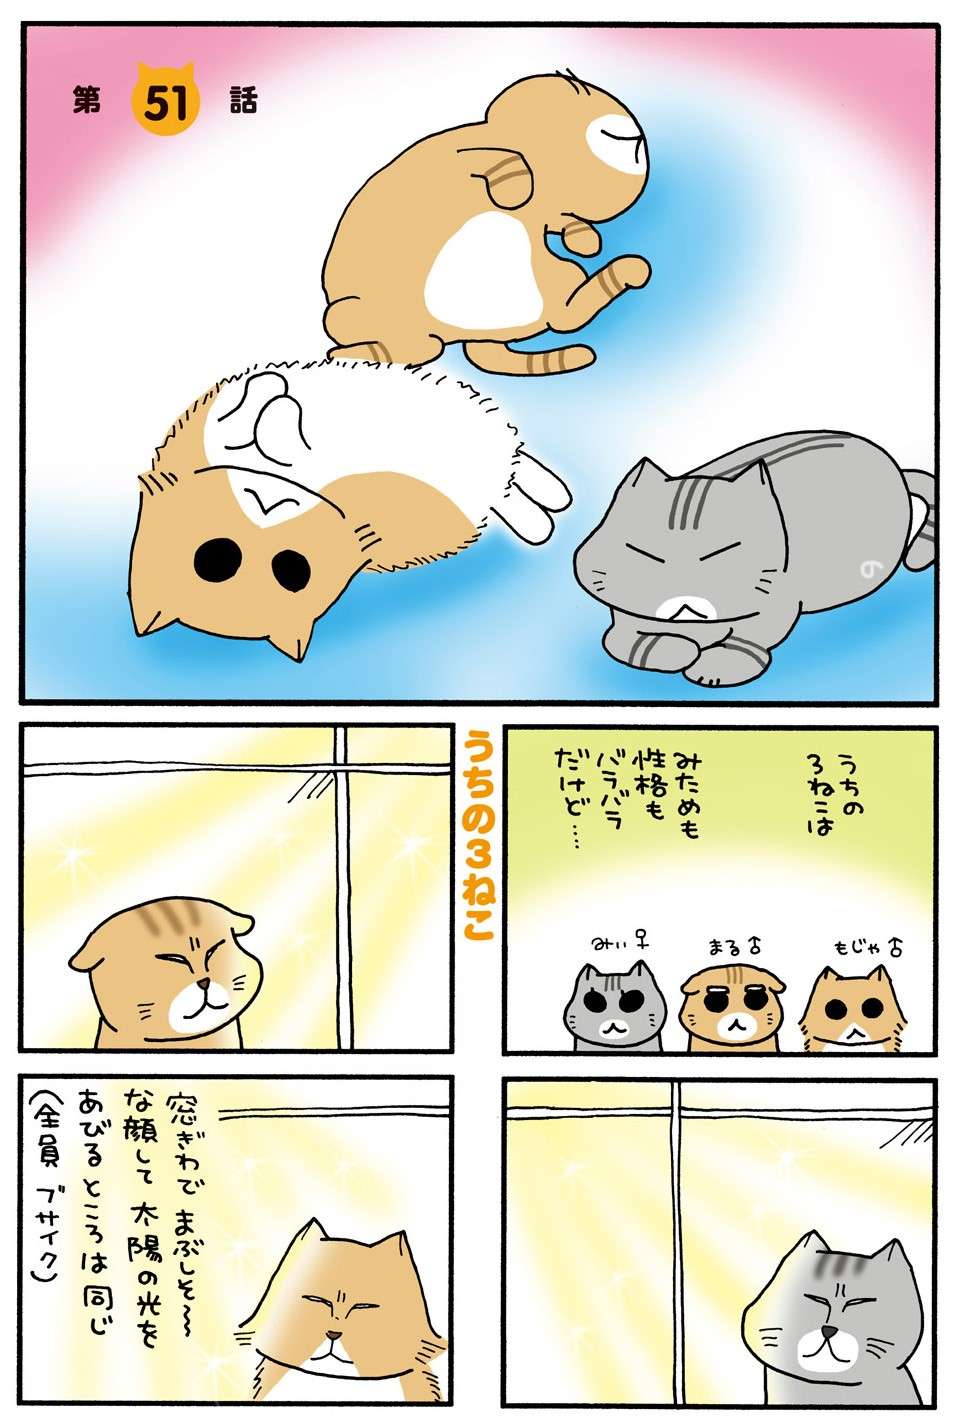 転がってきたボールをキャッチした猫。「ナイスパス！」と思った次の瞬間の「悲劇」／うちの3ねこ 3 uchinosanneko3_019.jpg